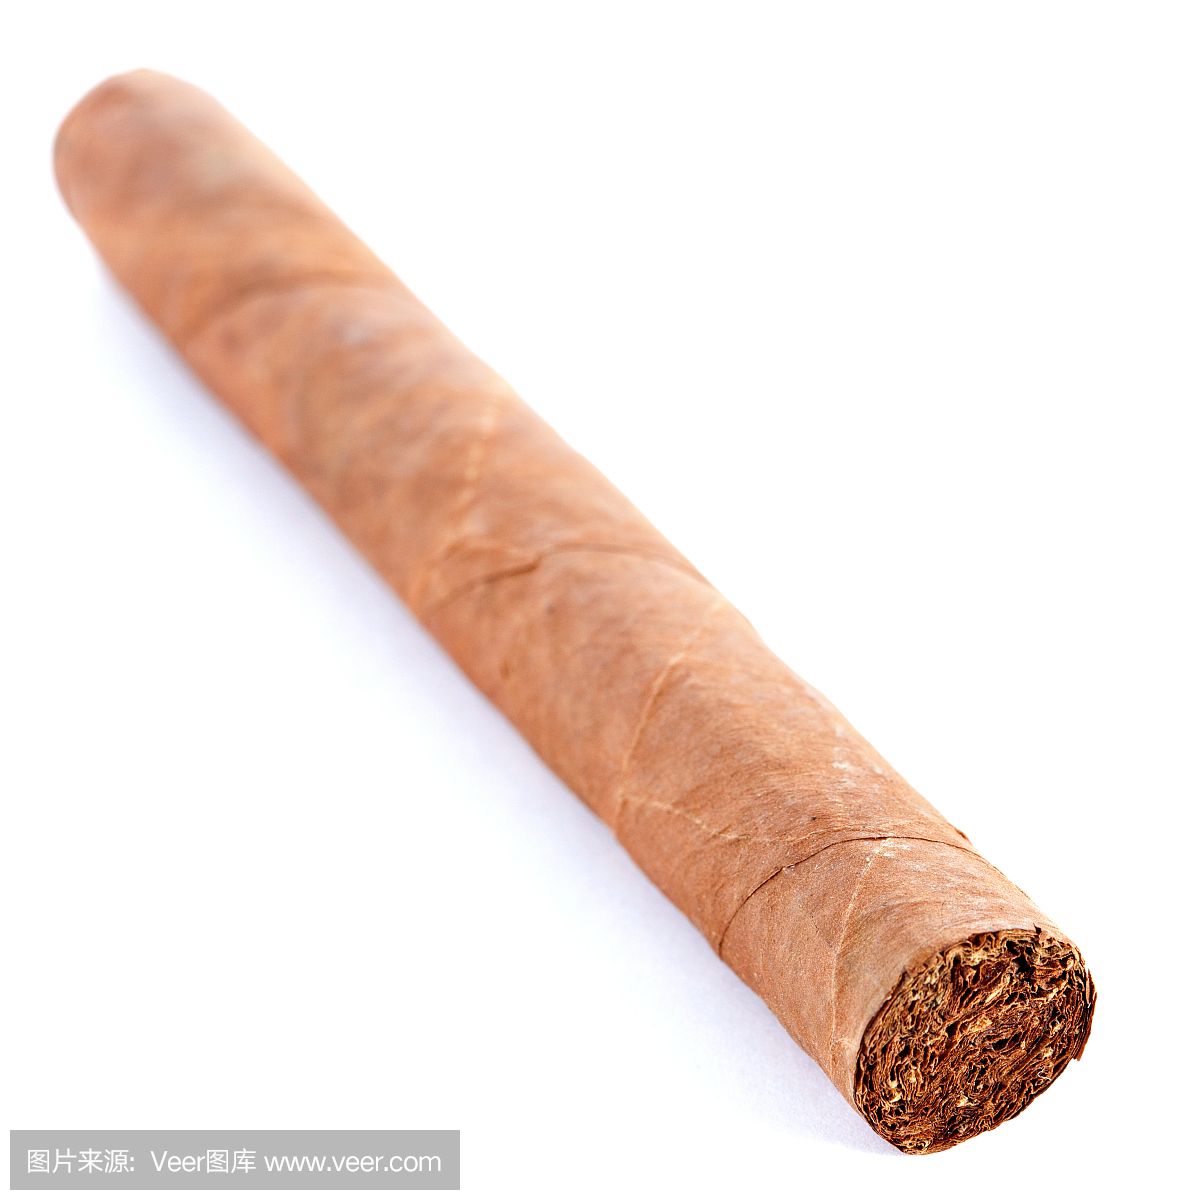 古巴文化,古巴风情,雪茄,雪茄烟